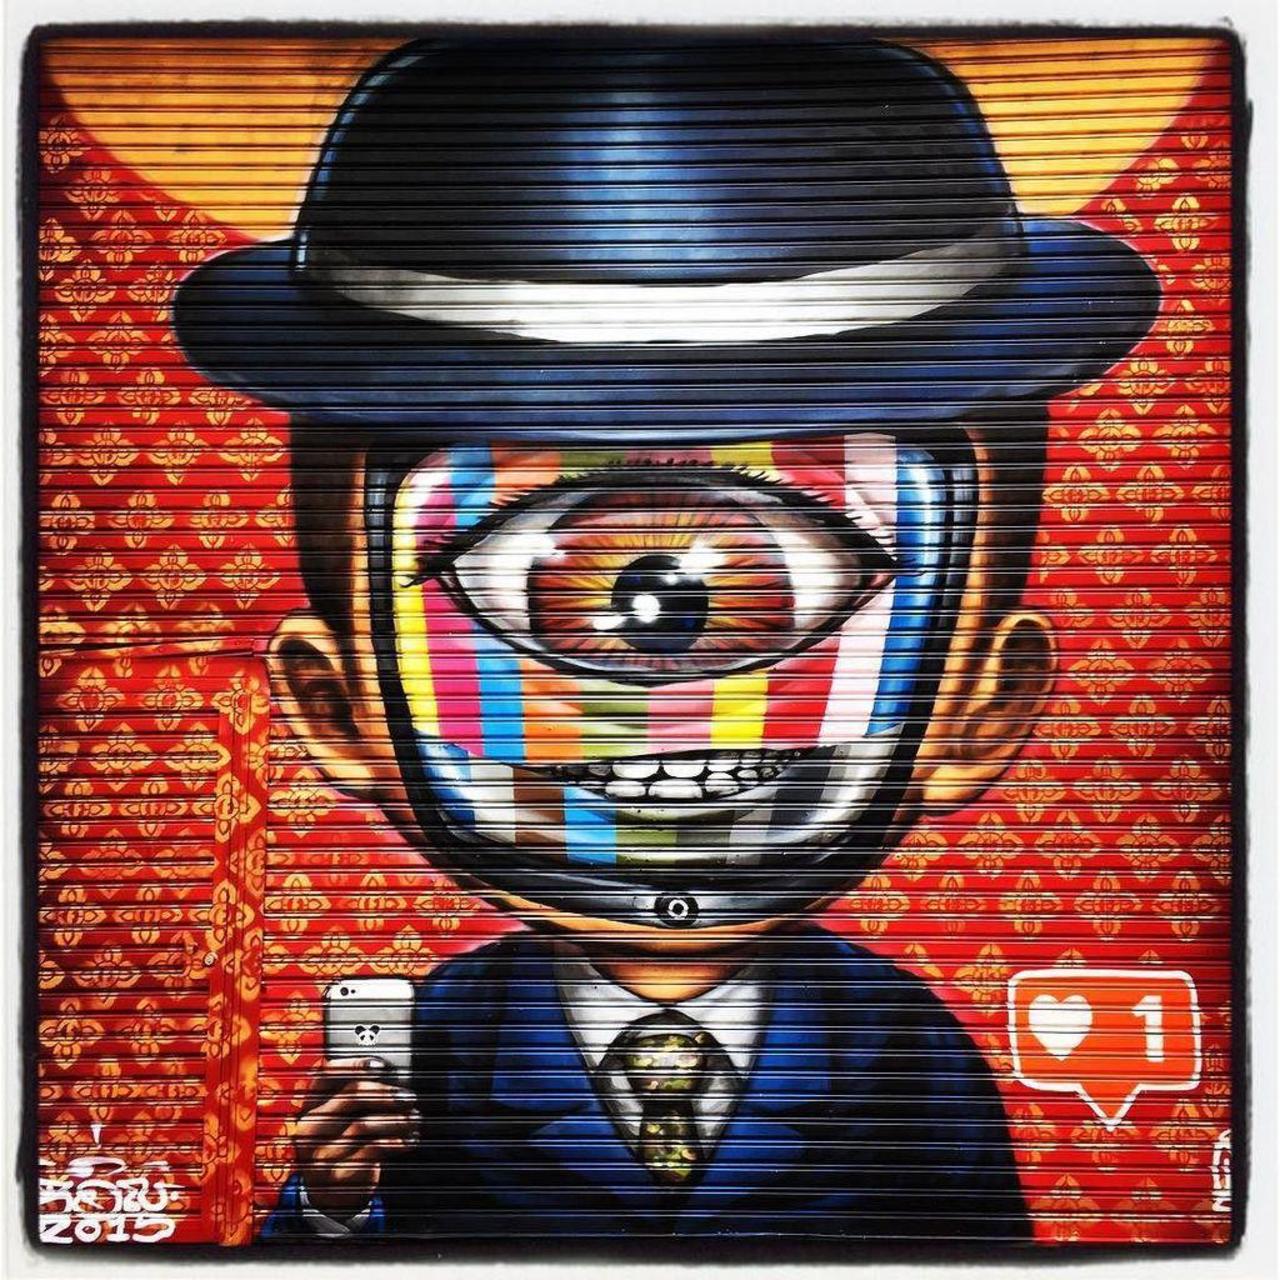 RT @artpushr: via #d.a.n_s_p.i.c.s "http://bit.ly/1OkNaYe" #graffiti #streetart http://t.co/m76C0JxzLS